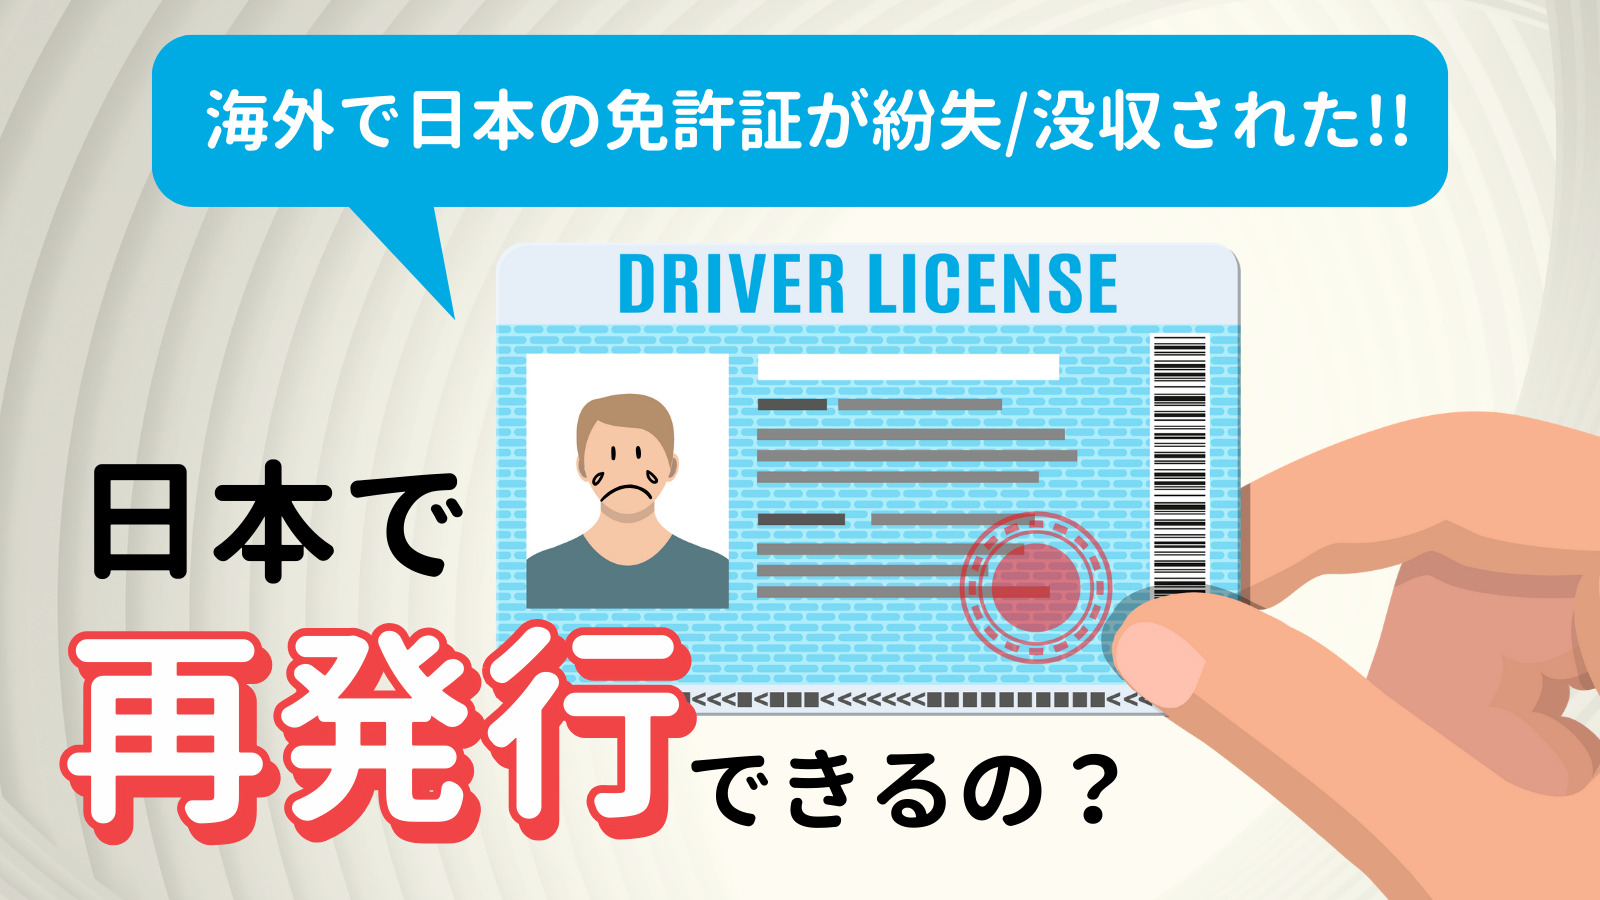 海外で日本の運転免許証が紛失/没収された!?日本で運転免許証再発行できる？